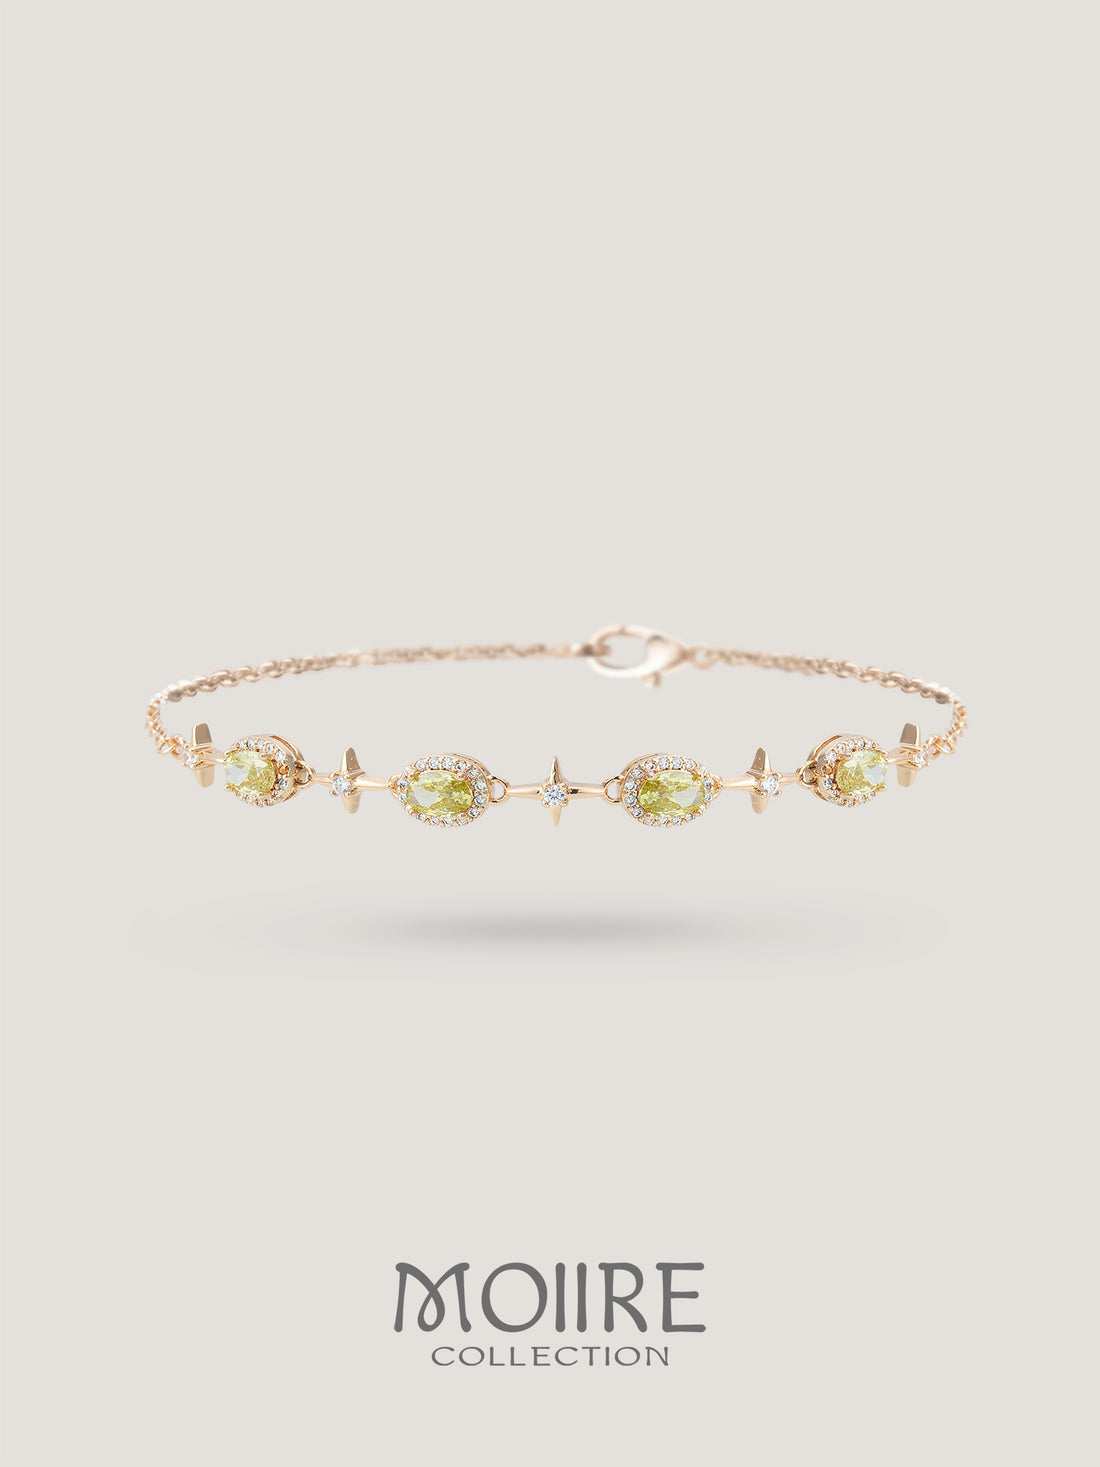 Moiire Jewelry | 清新薄荷